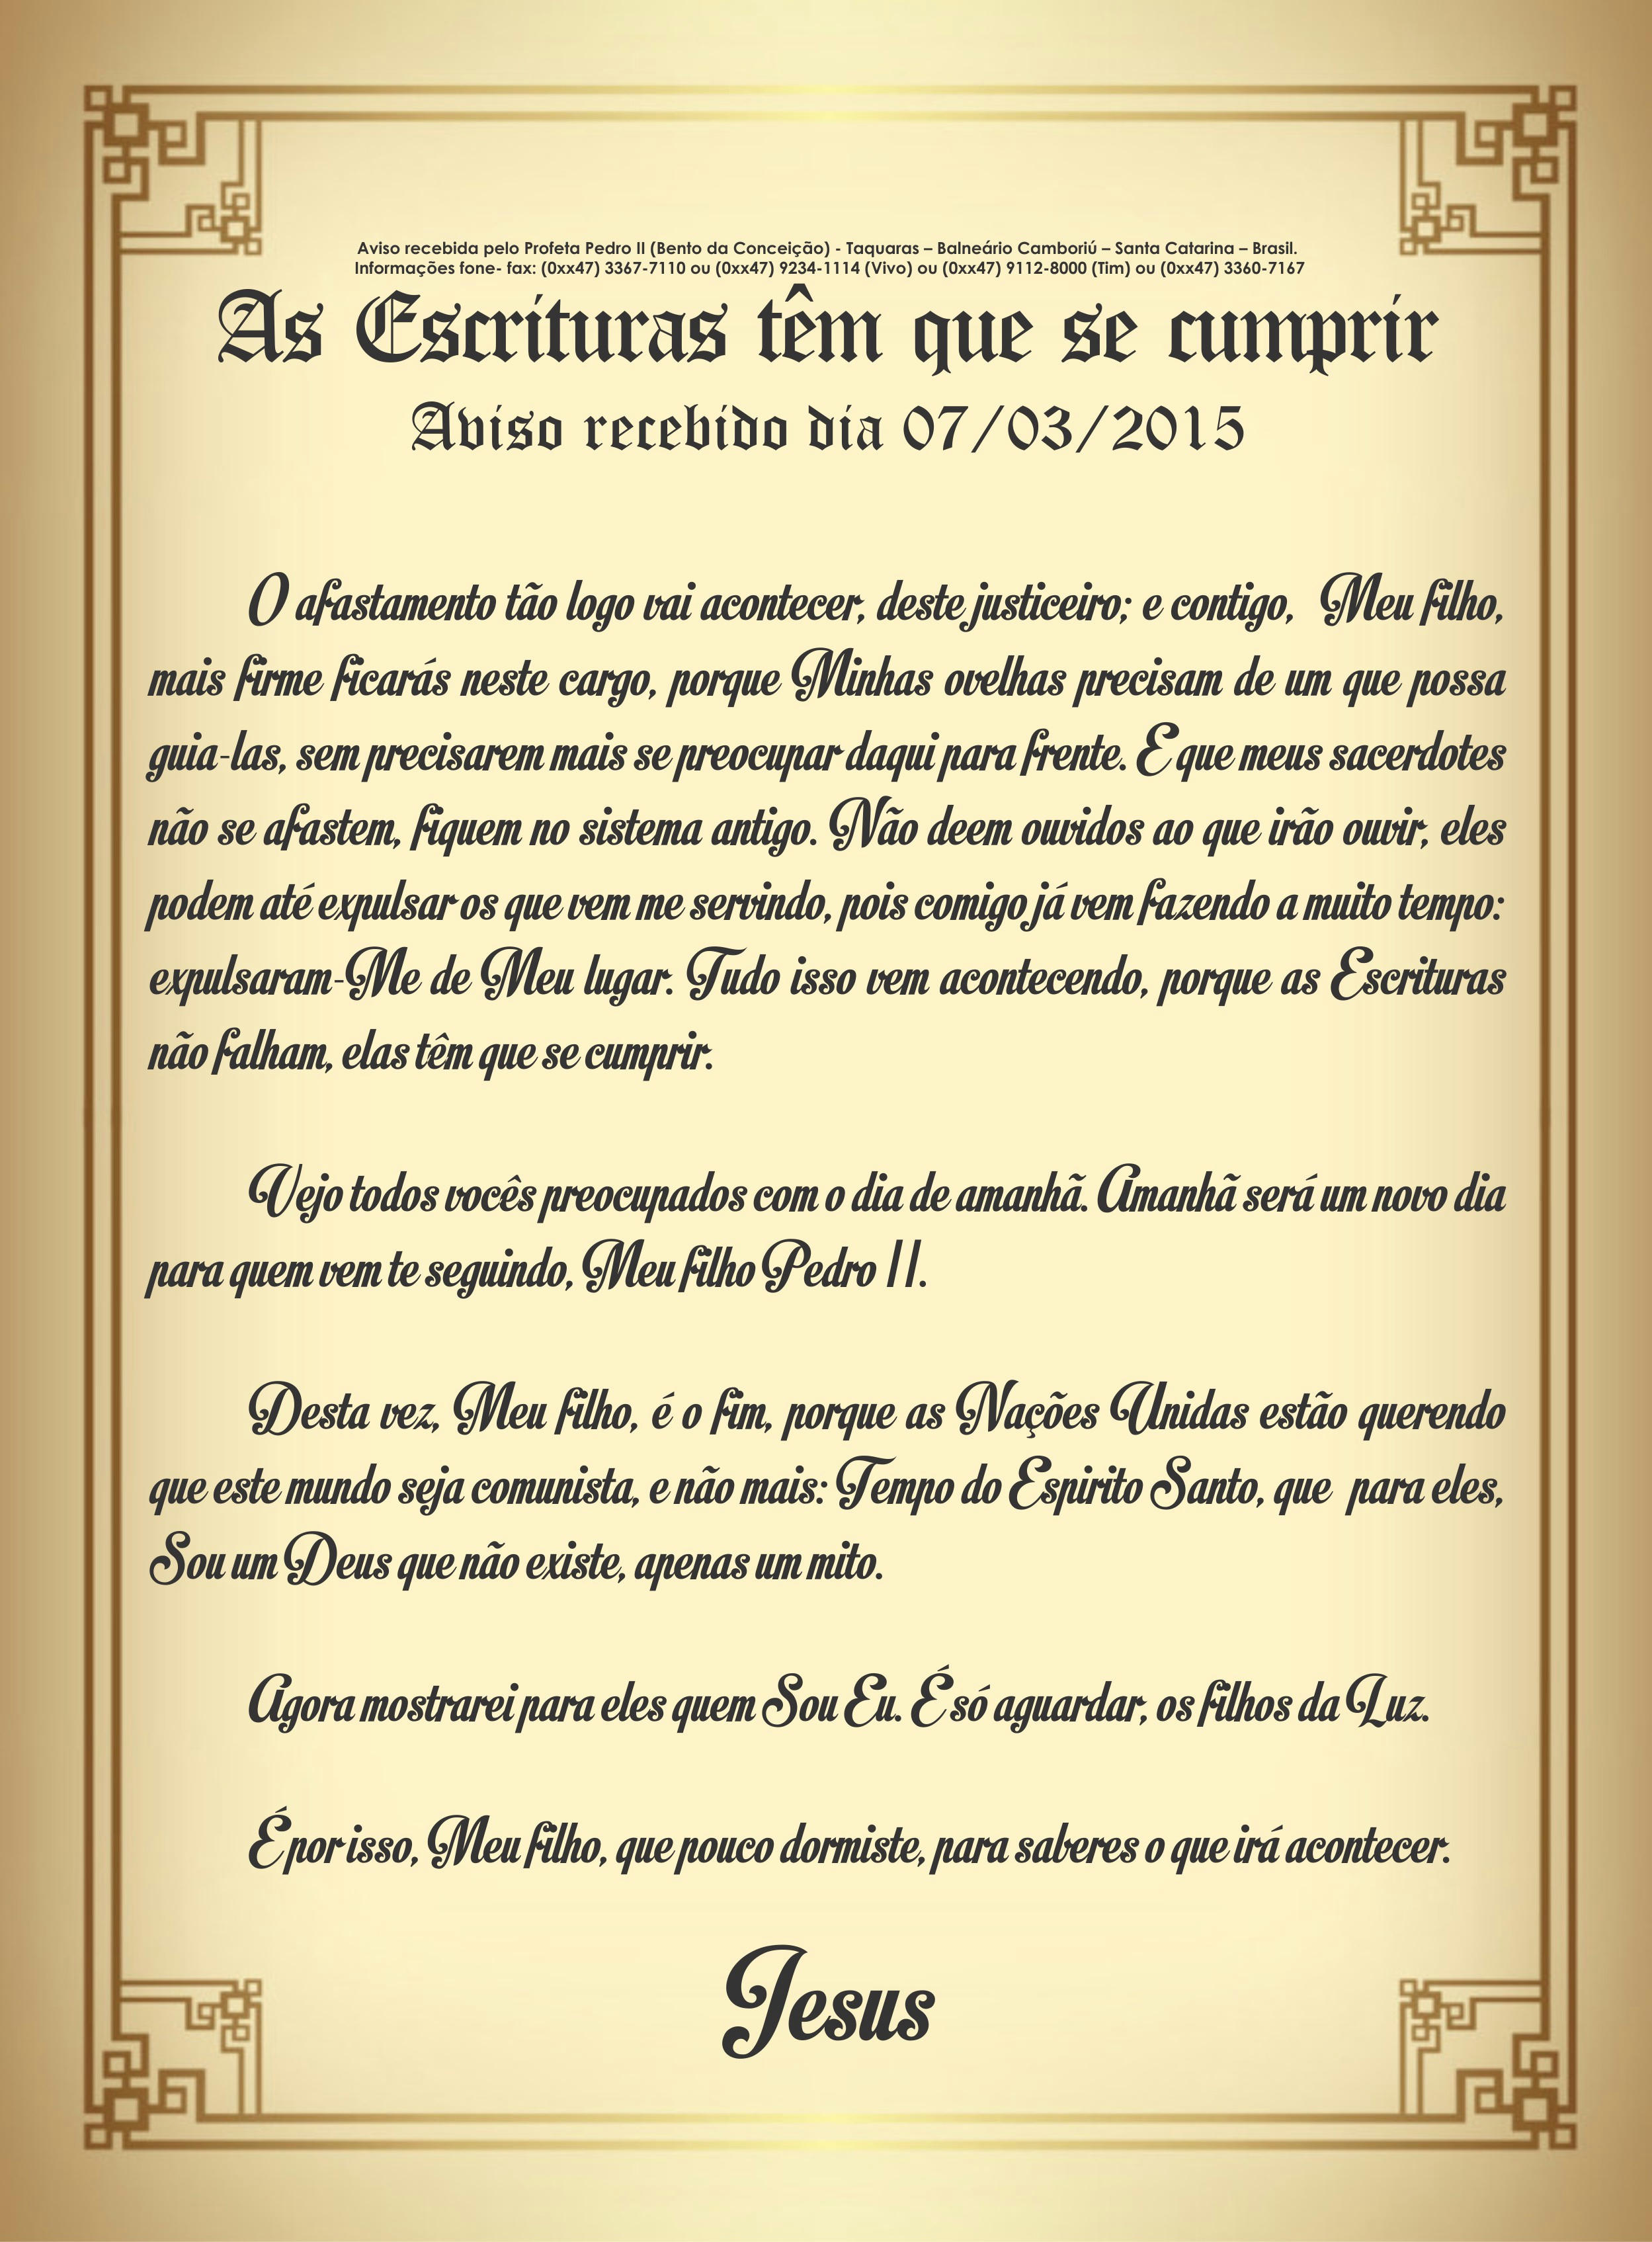 Aviso recebido pelo Profeta Pedro II no dia 07/03/15 - As Escrituras têm que se cumprir